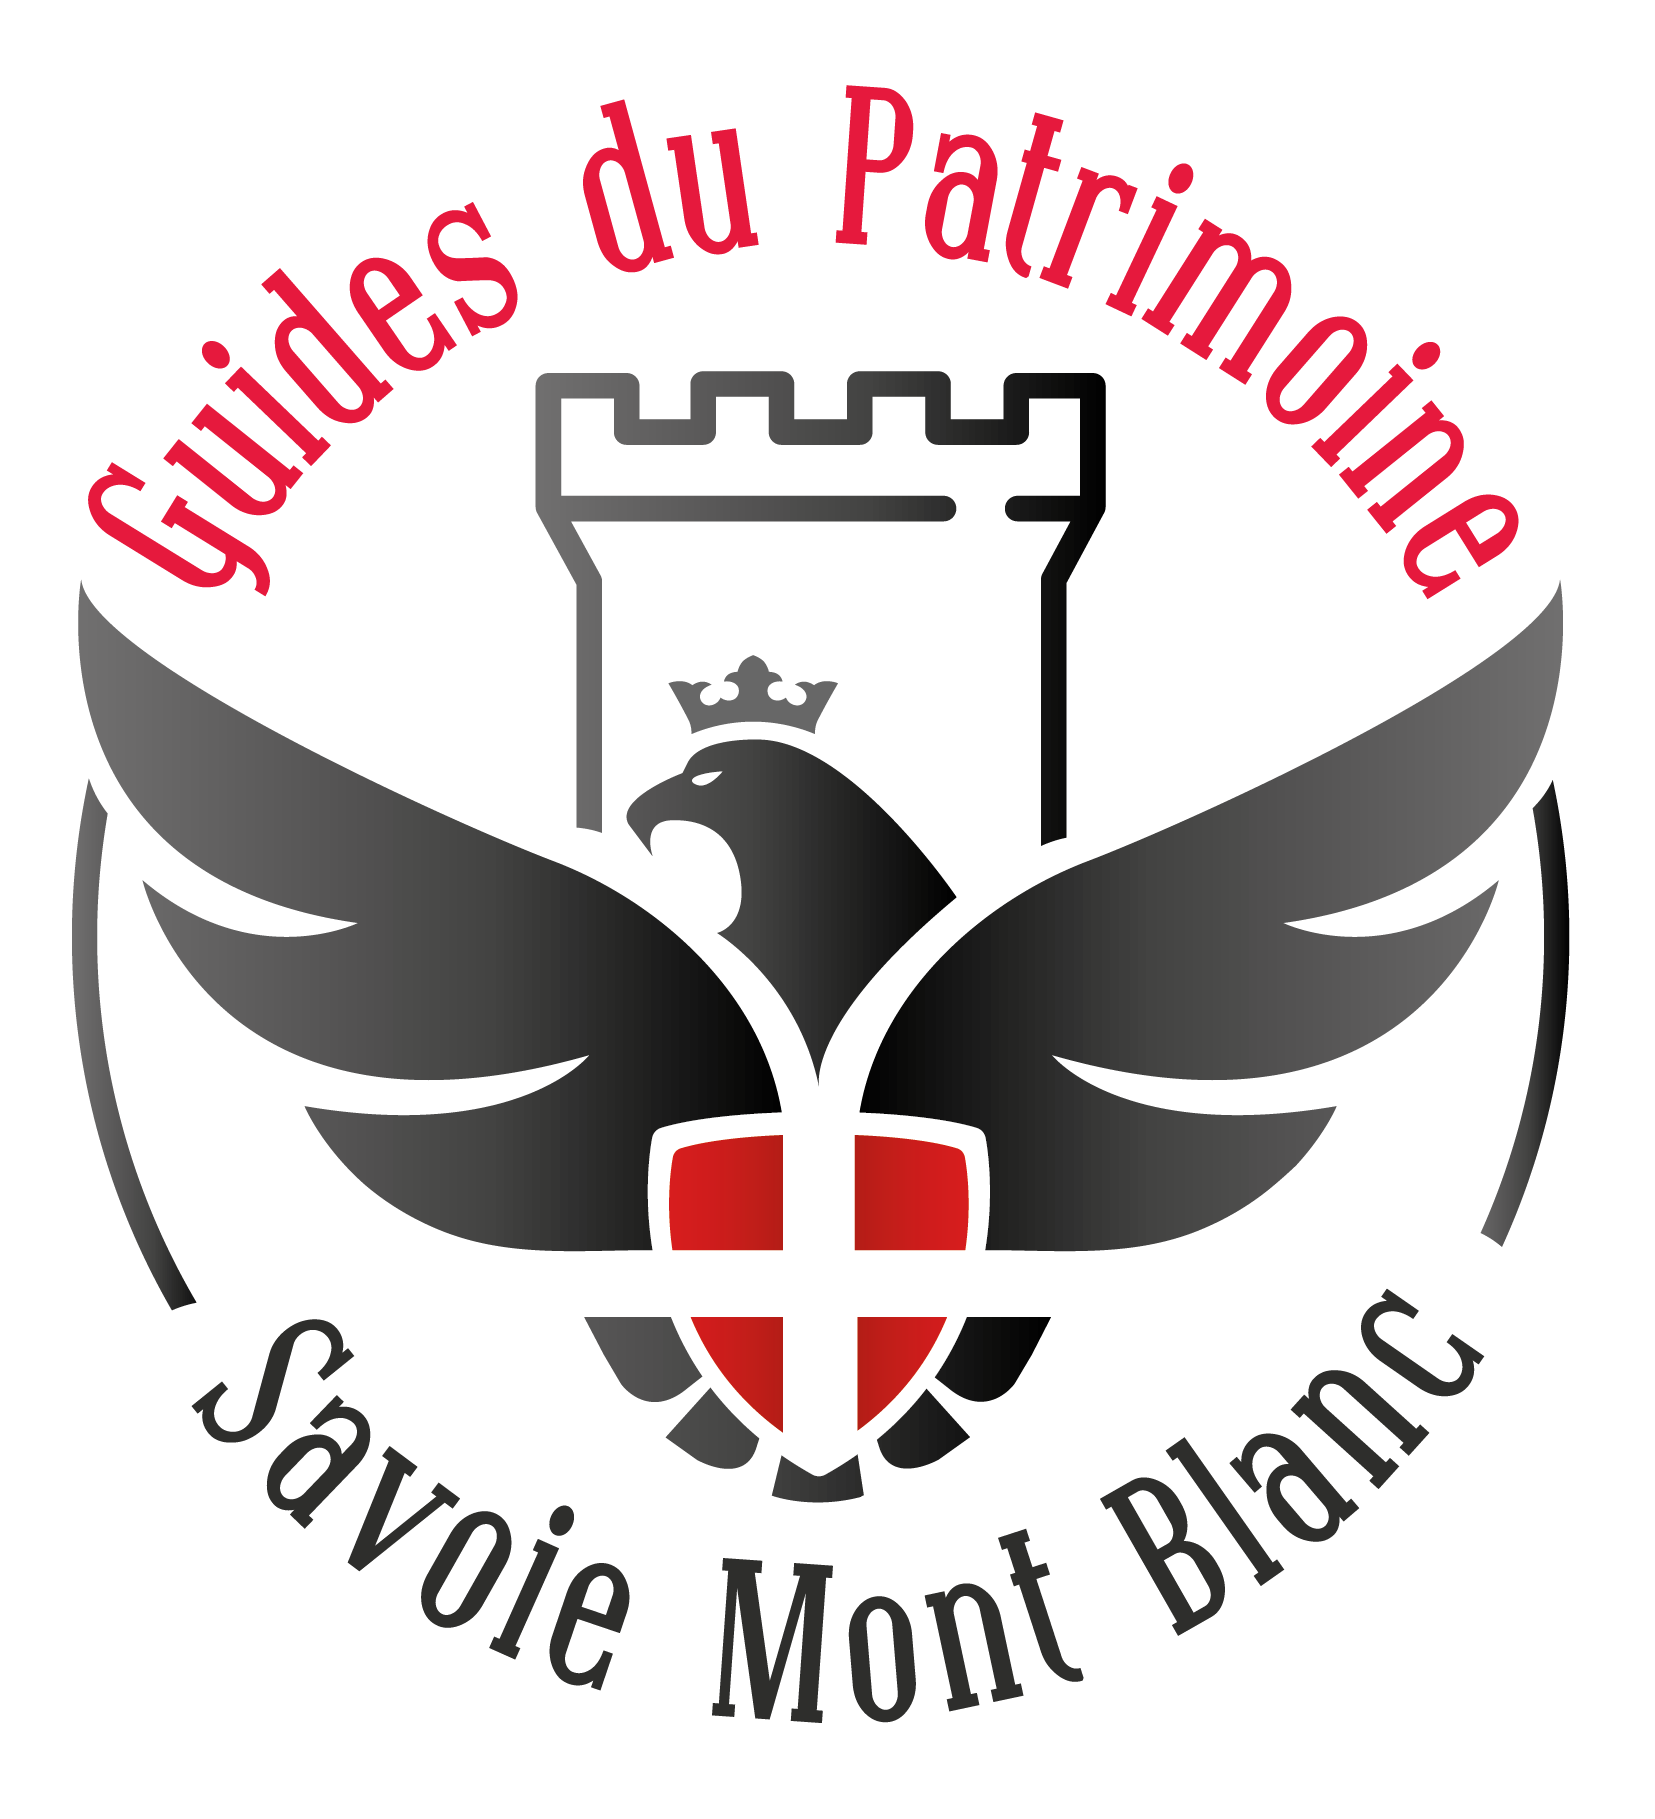 Guides du Patrimoine Savoie Mont Blanc